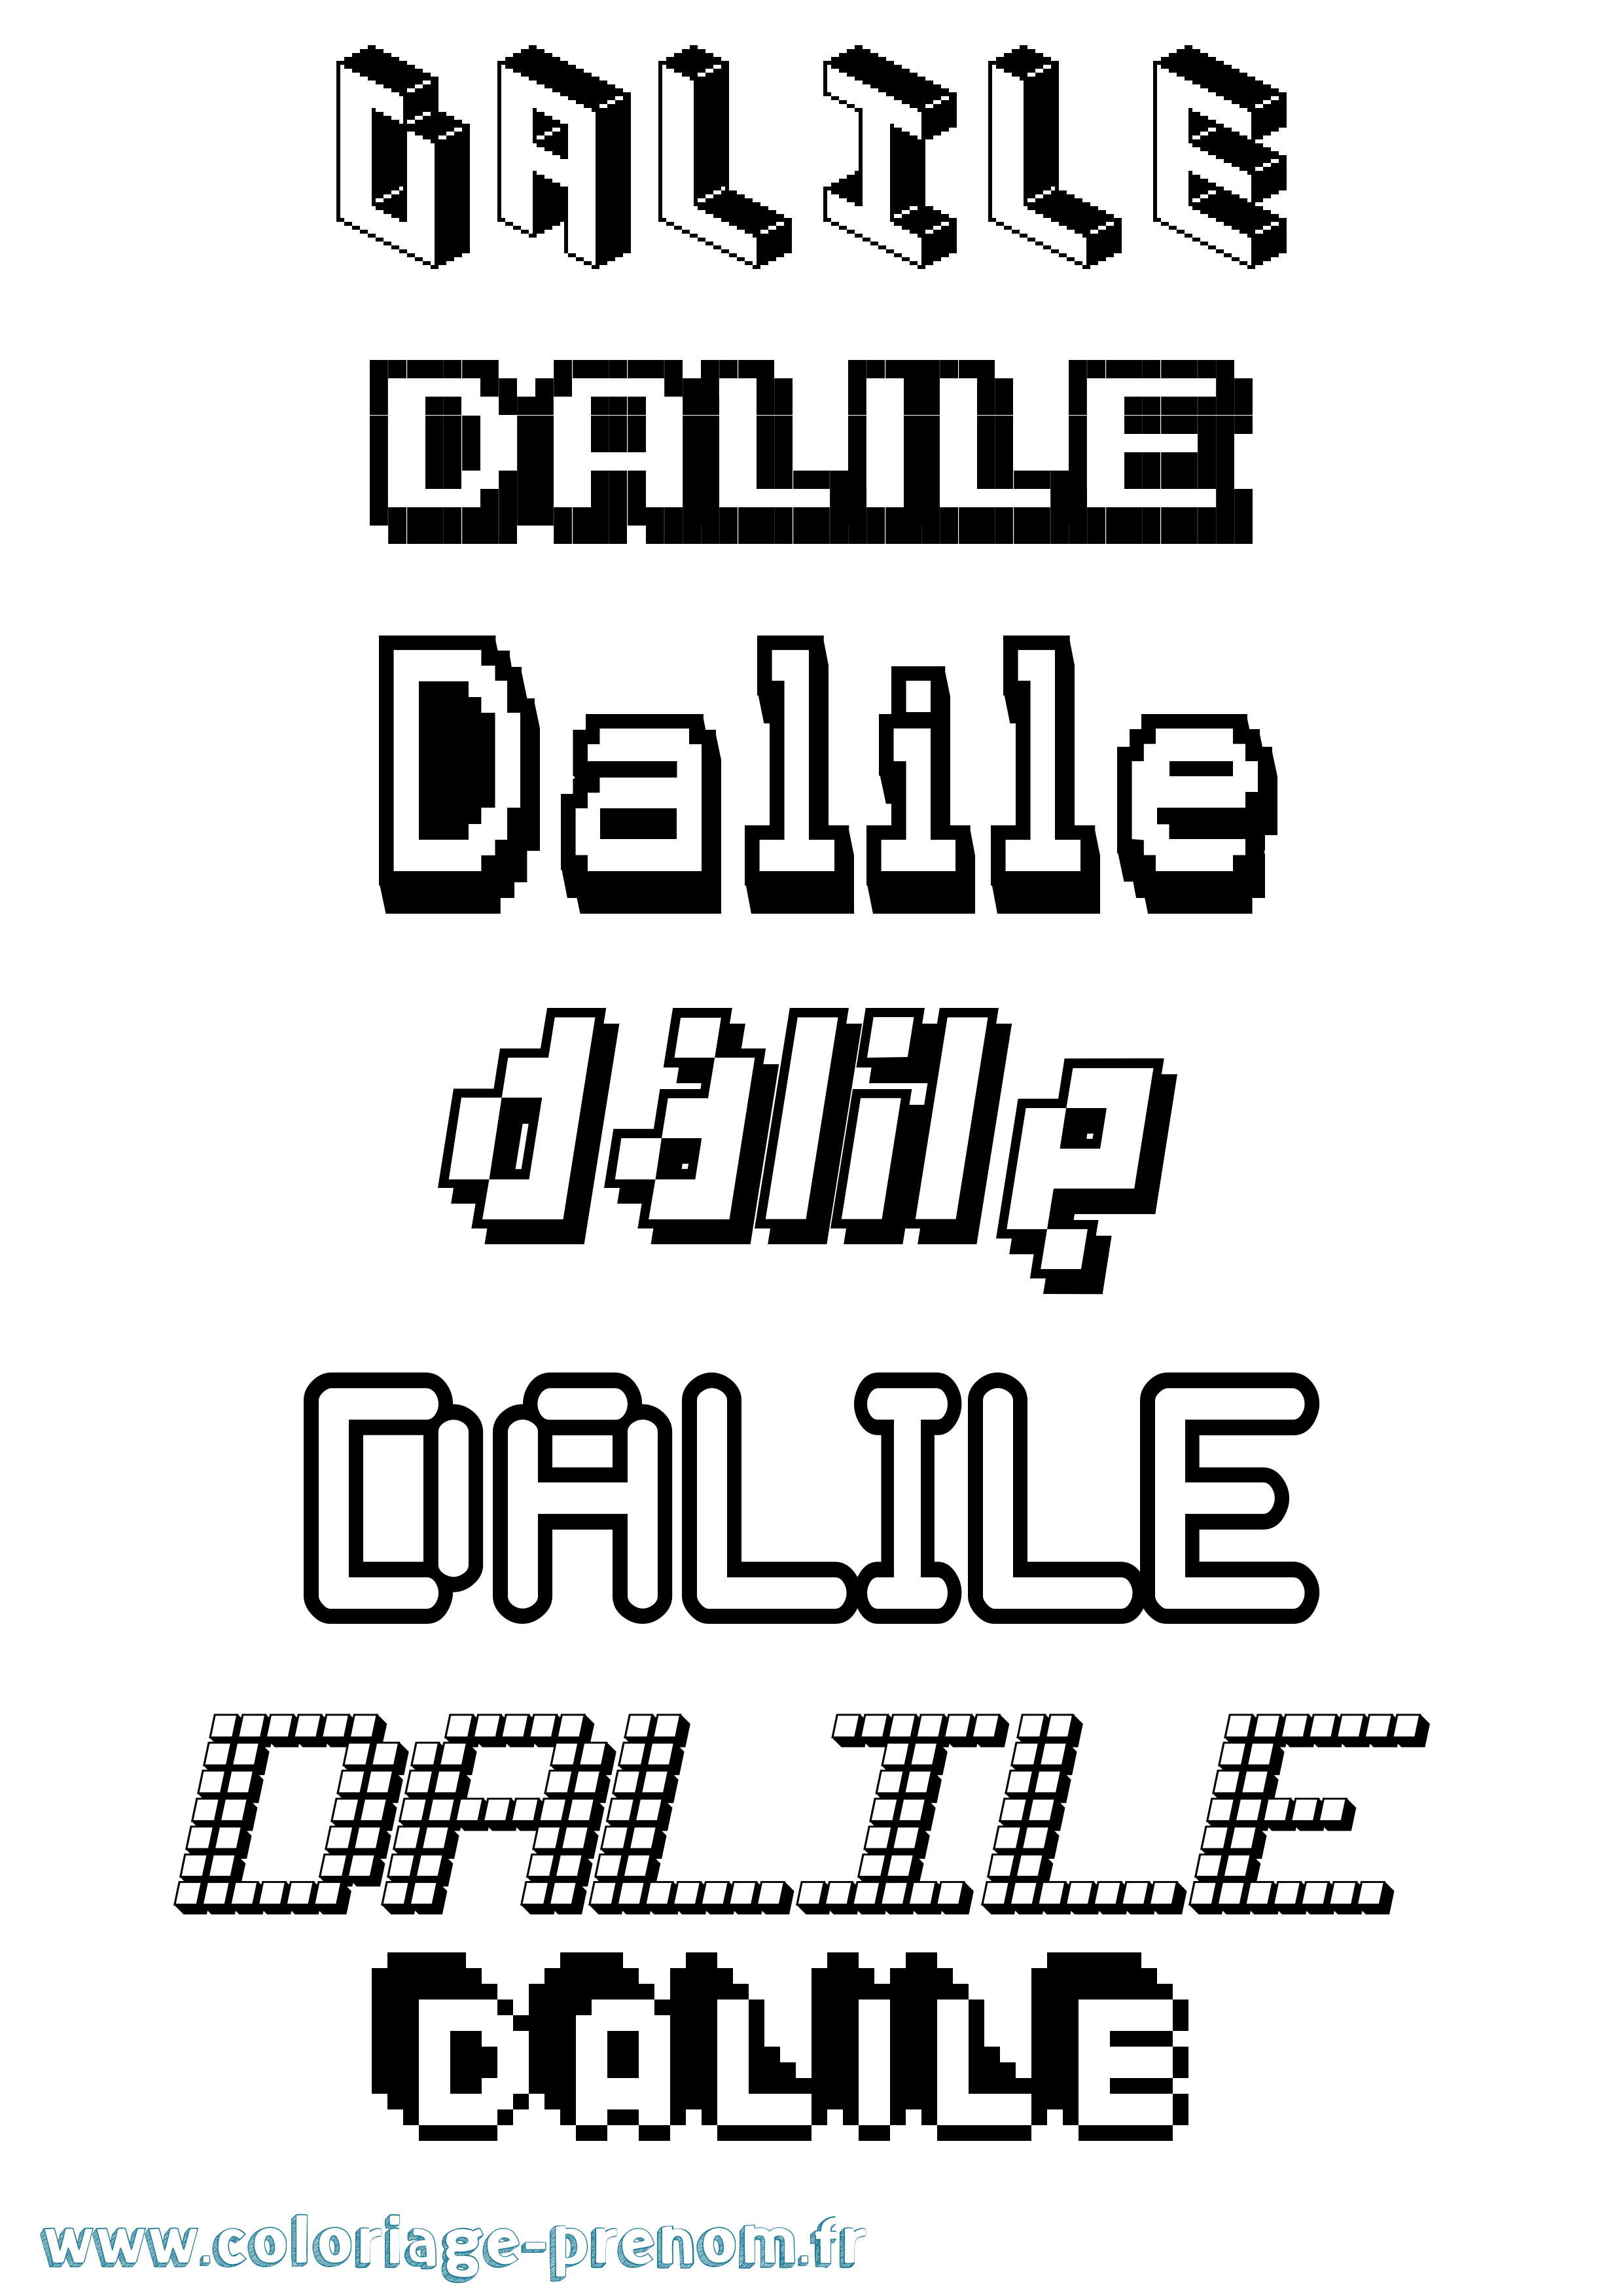 Coloriage prénom Dalile Pixel